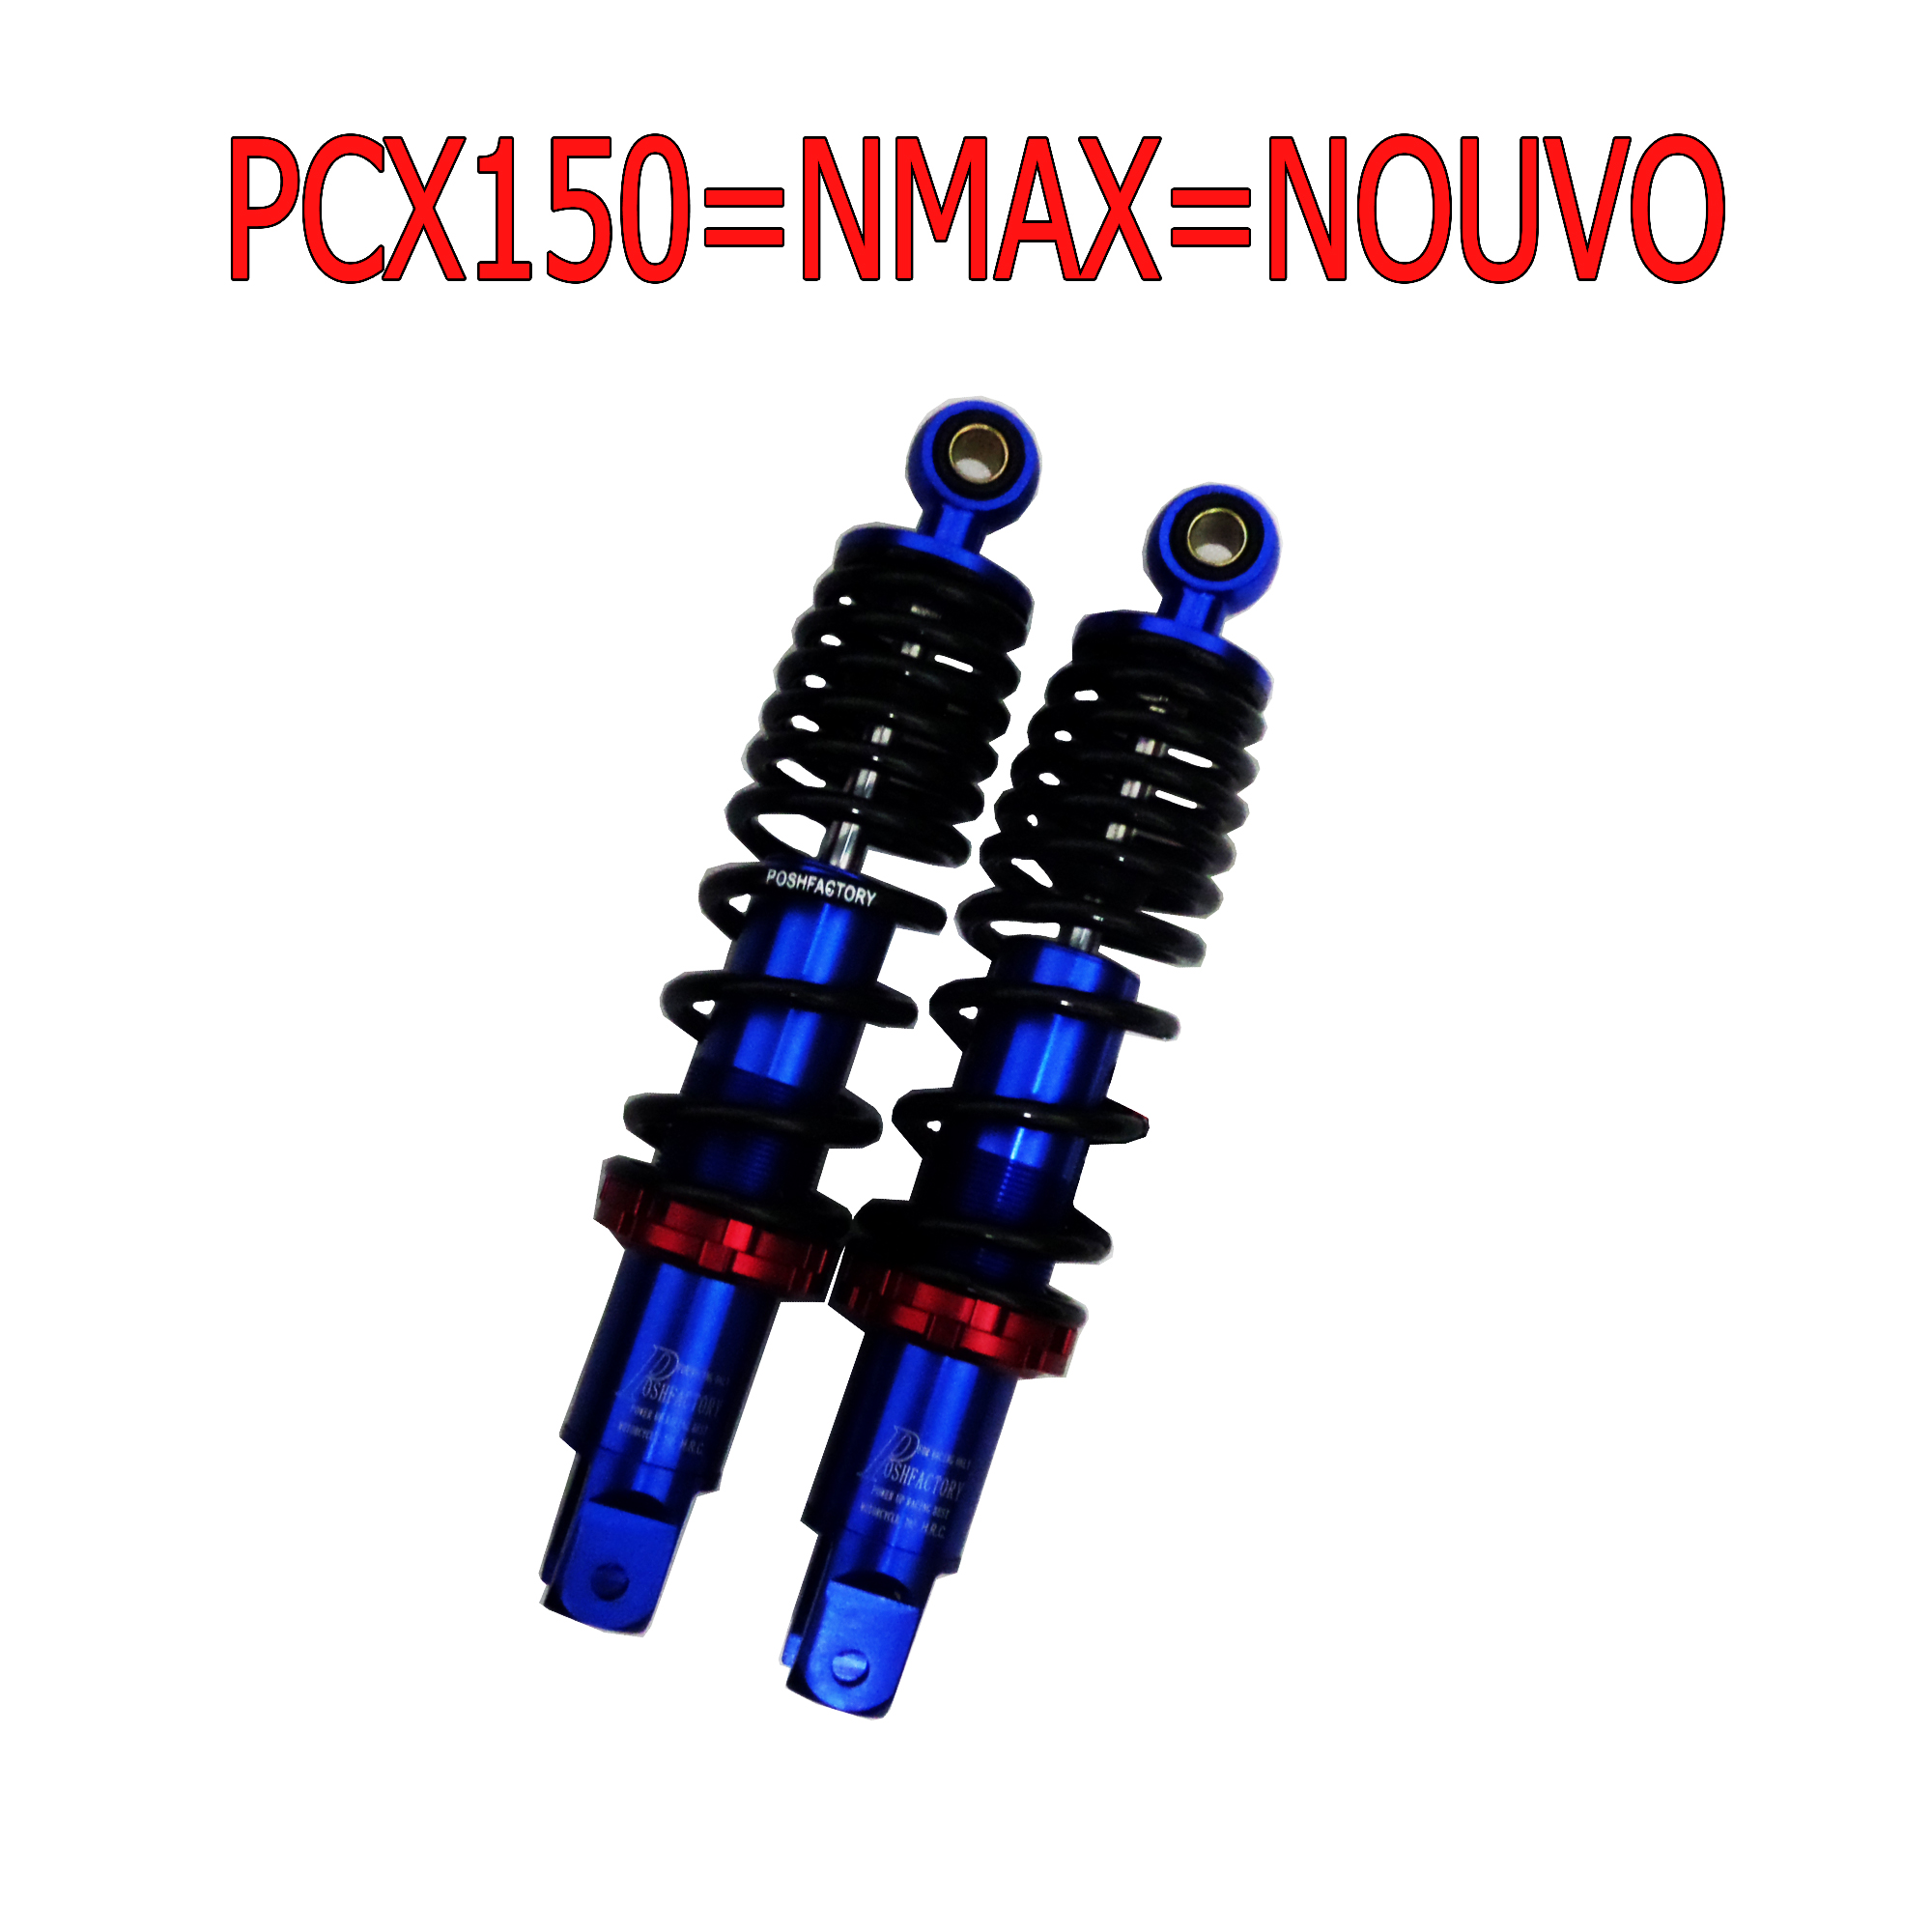 โช๊คหลังแต่งมอเตอร์ไซด์ทรงโหลดงาน CNC แท้ สำหรับ PCX150=AEROX=NMAX=NOUVO น้ำเงิน (สปริงดำ+แป้นแดง)ยาว 295mmงานเทพ